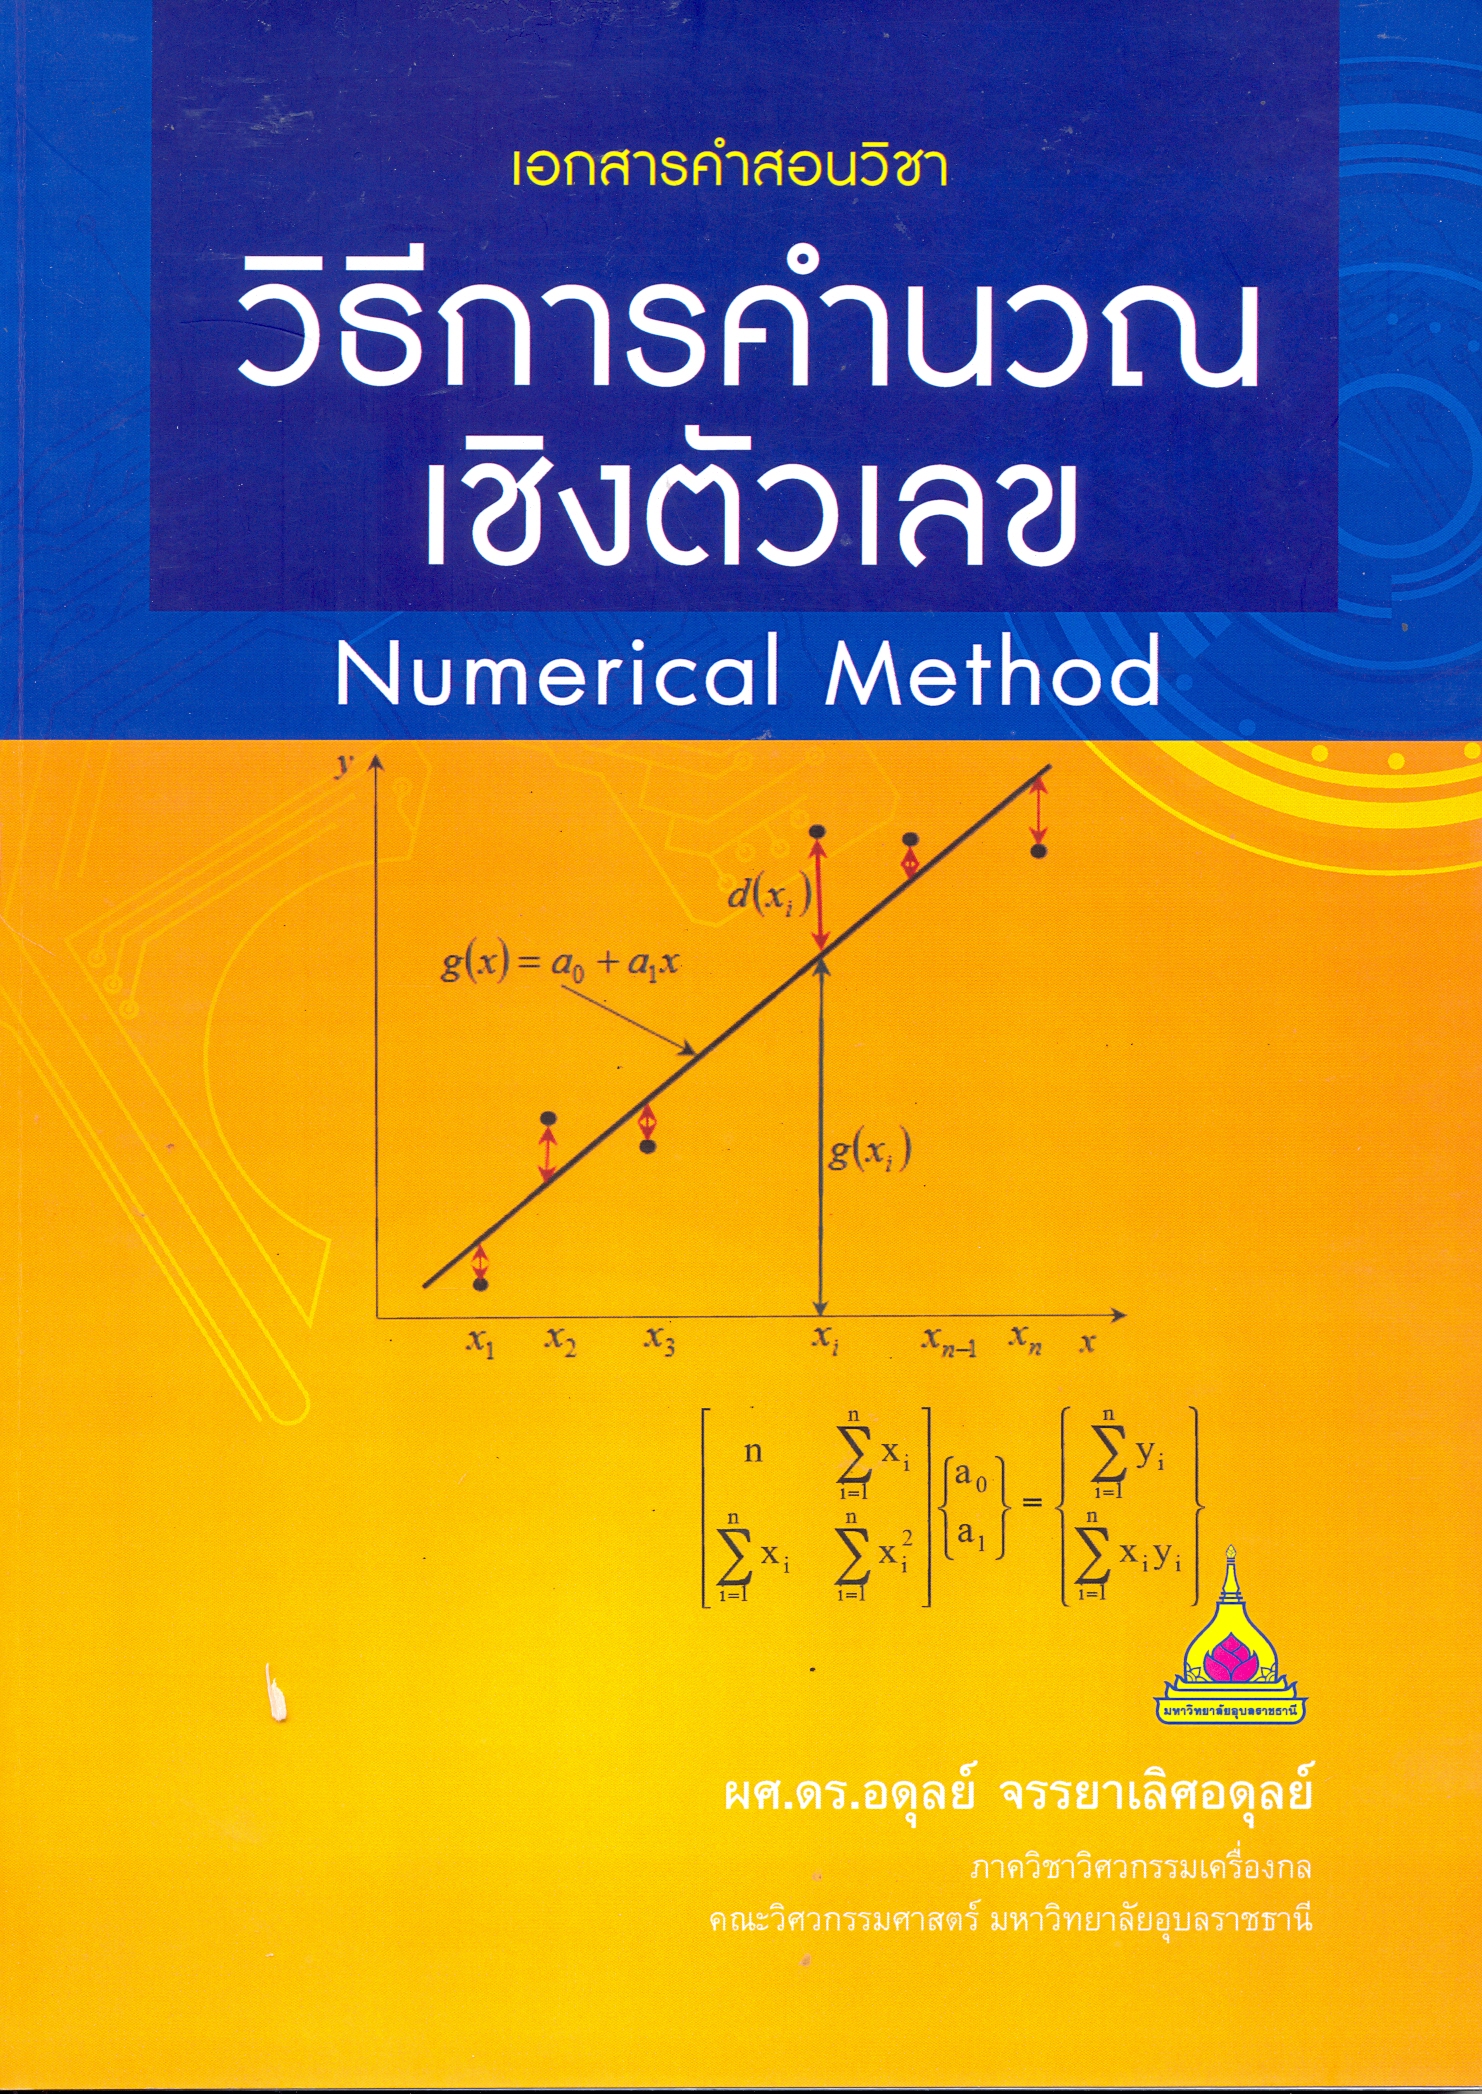 เอกสารคำสอนวิชา วิธีการคำนวณเชิงตัวเลข = Numerical method